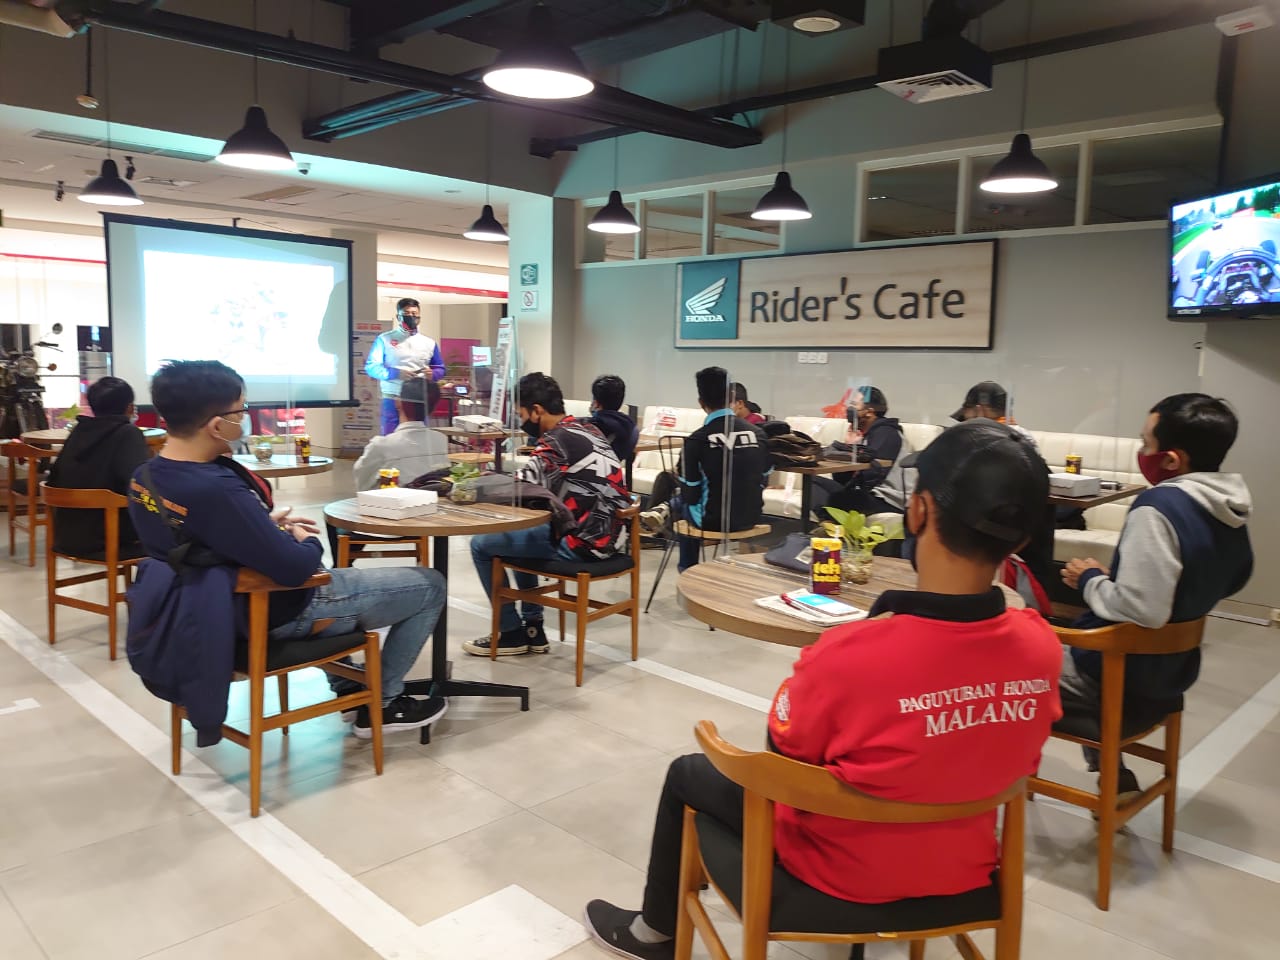 1618975287_Paguyuban Honda Malang Kopdargab di MPM Cafe Riders , Bahas Rencana Donasi Untuk Bencana Gempa Malang.jpeg